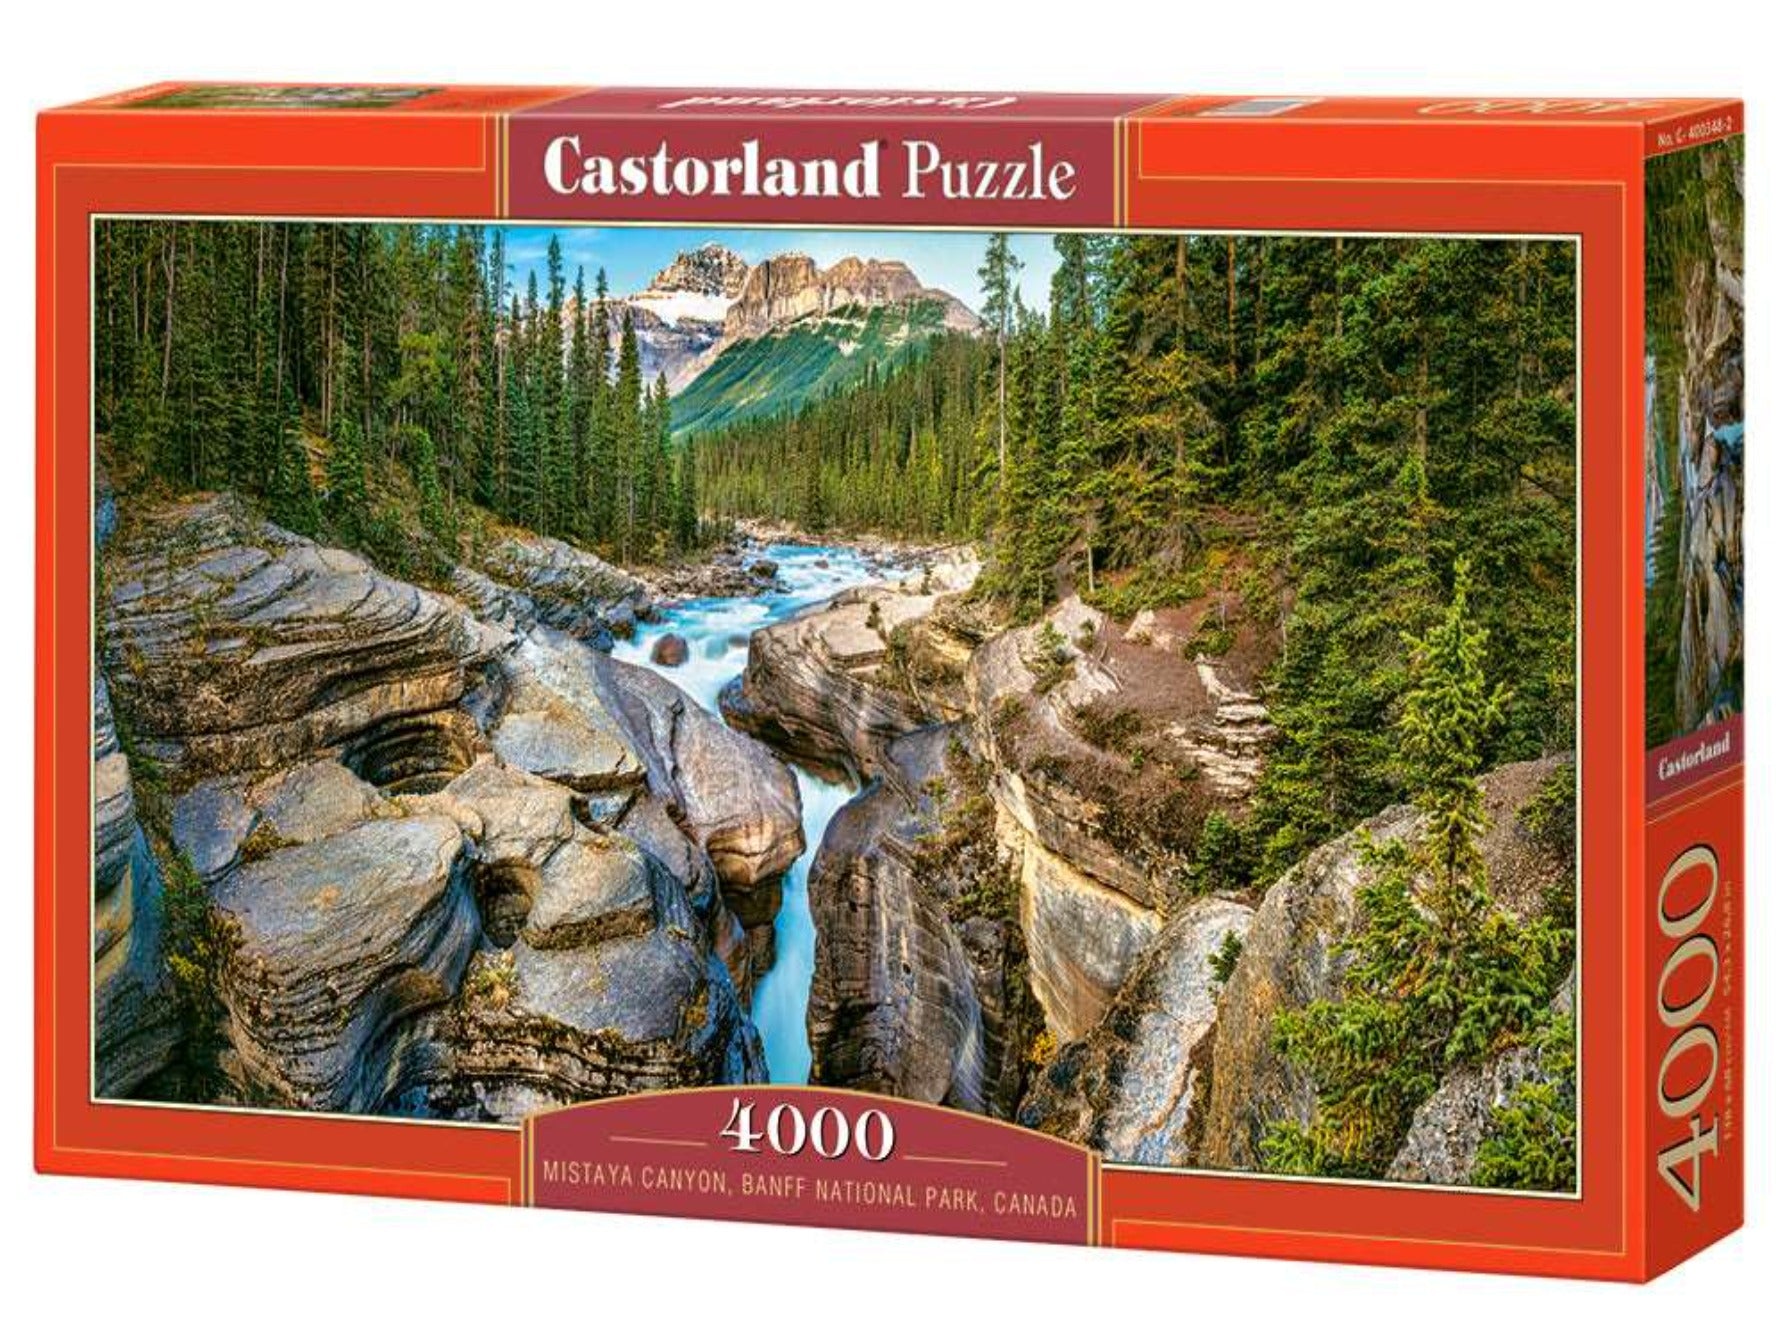 Castorland 3000 Pieces Puzzle, Along The River